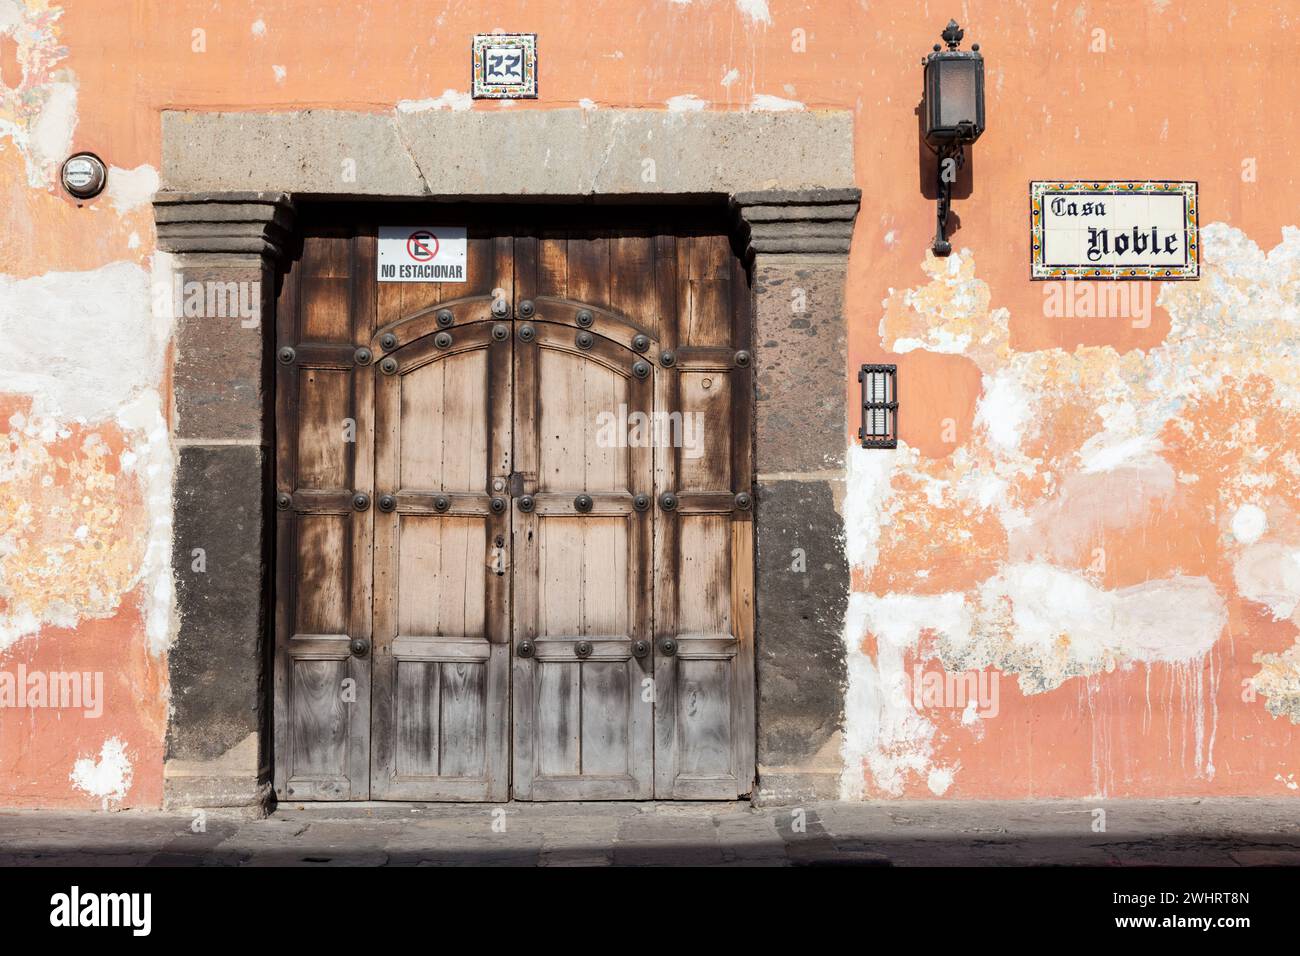 Antigua, Guatemala. Porte, trottoir, personne marchant. Banque D'Images